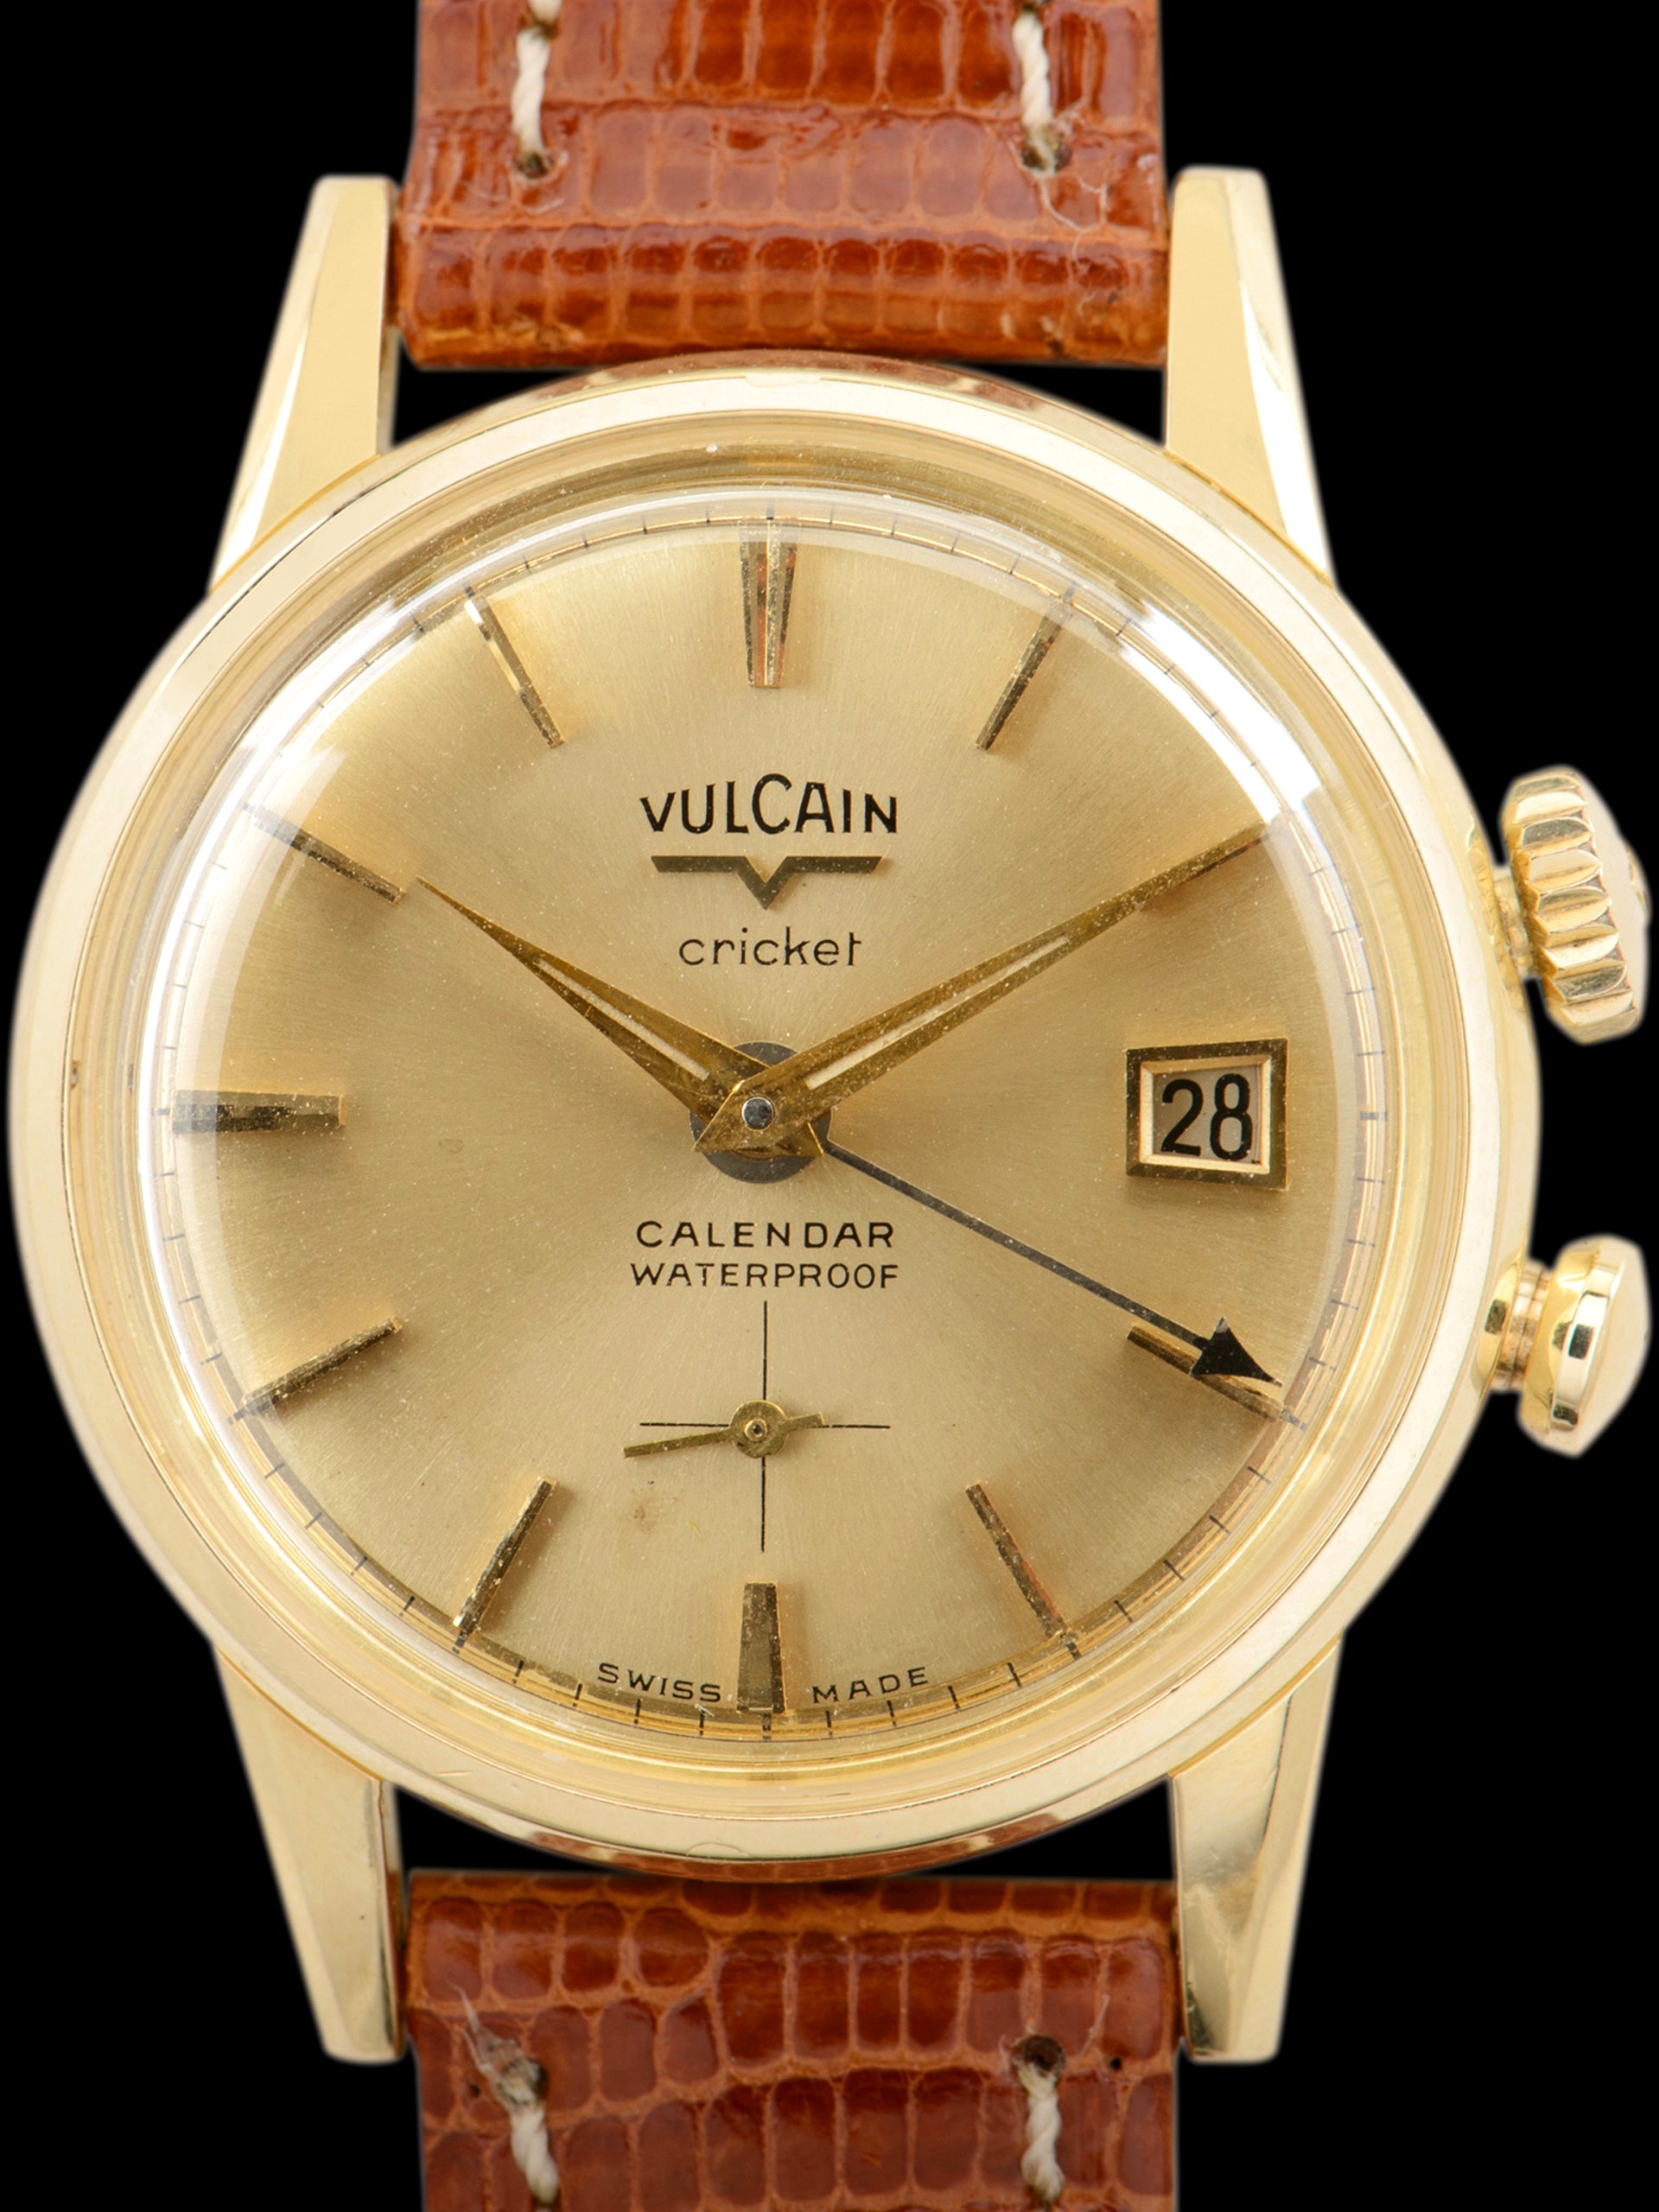 1950s Vulcain Cricket Calendar Waterproof (Ref. S1511A) "Gold Cap"